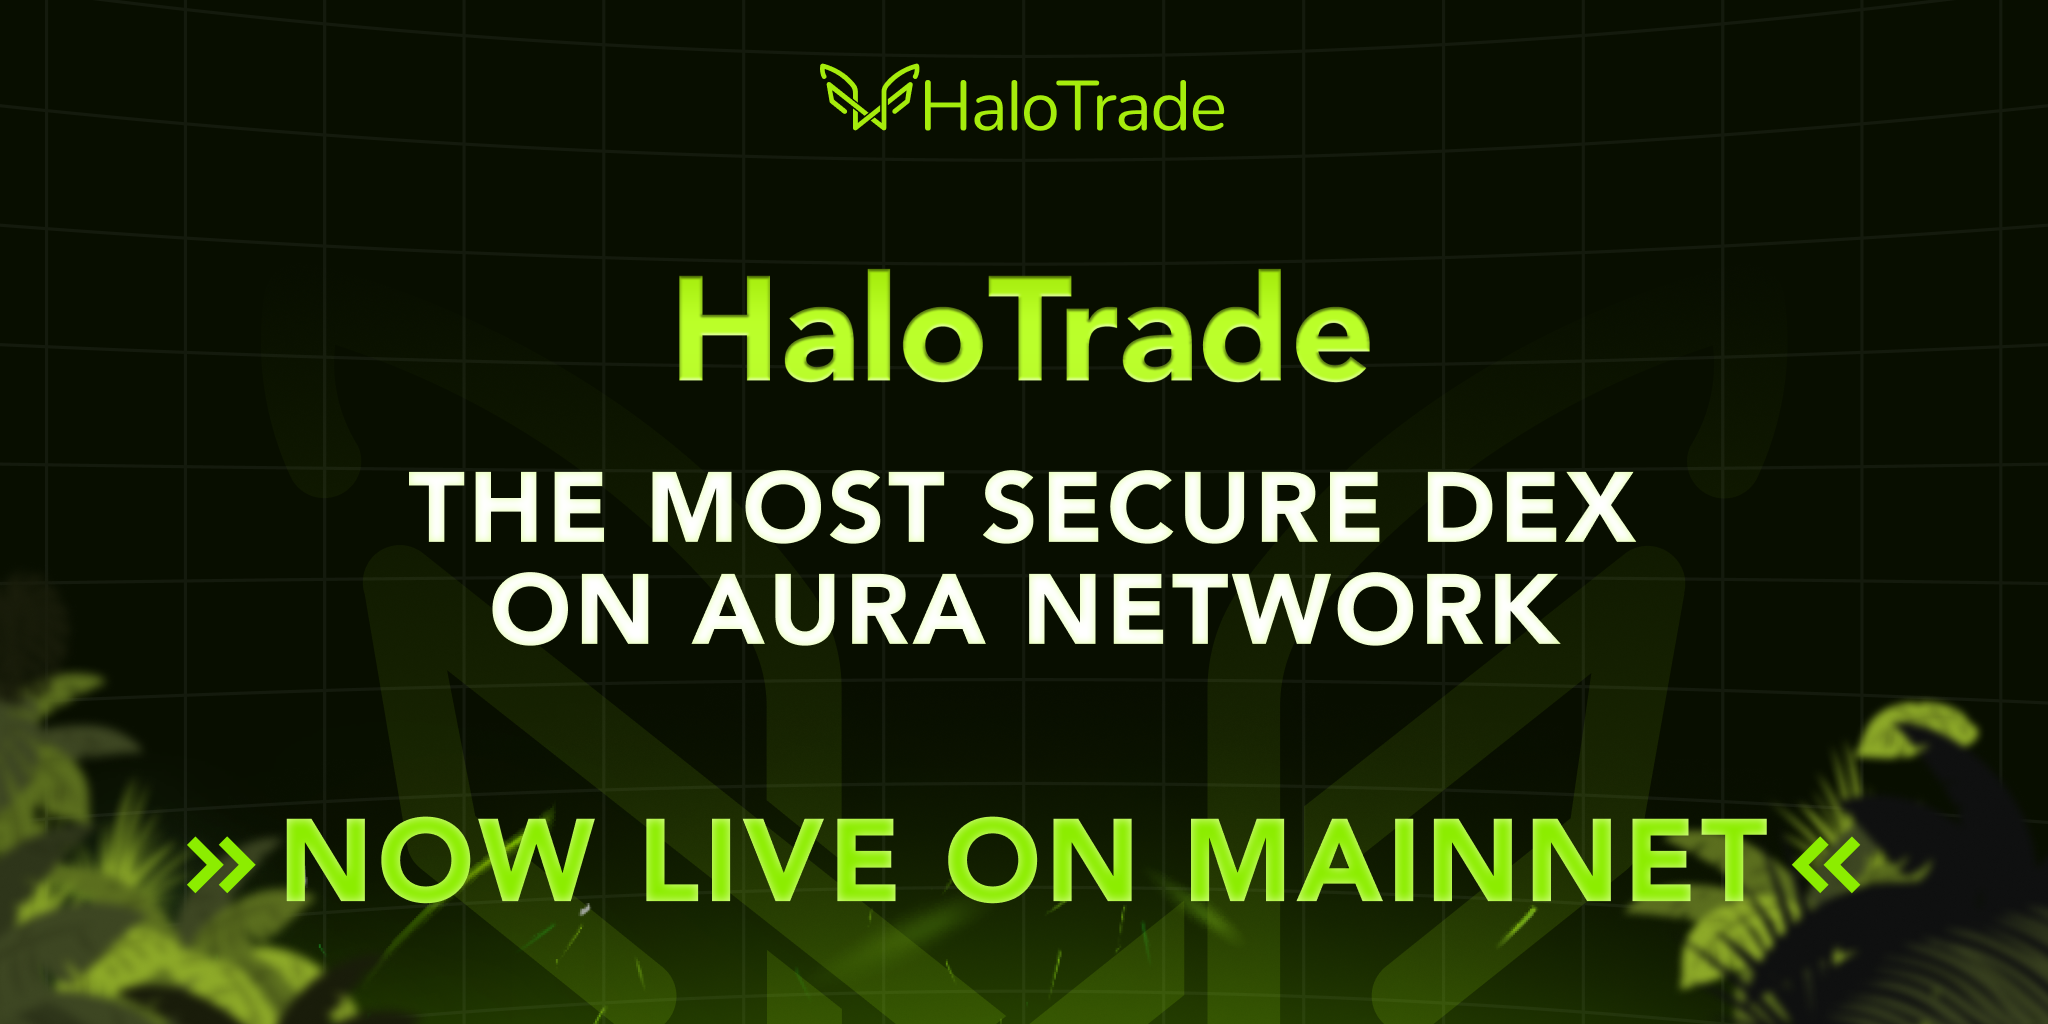 HaloTrade đã chính thức Mainnet trên Aura Network